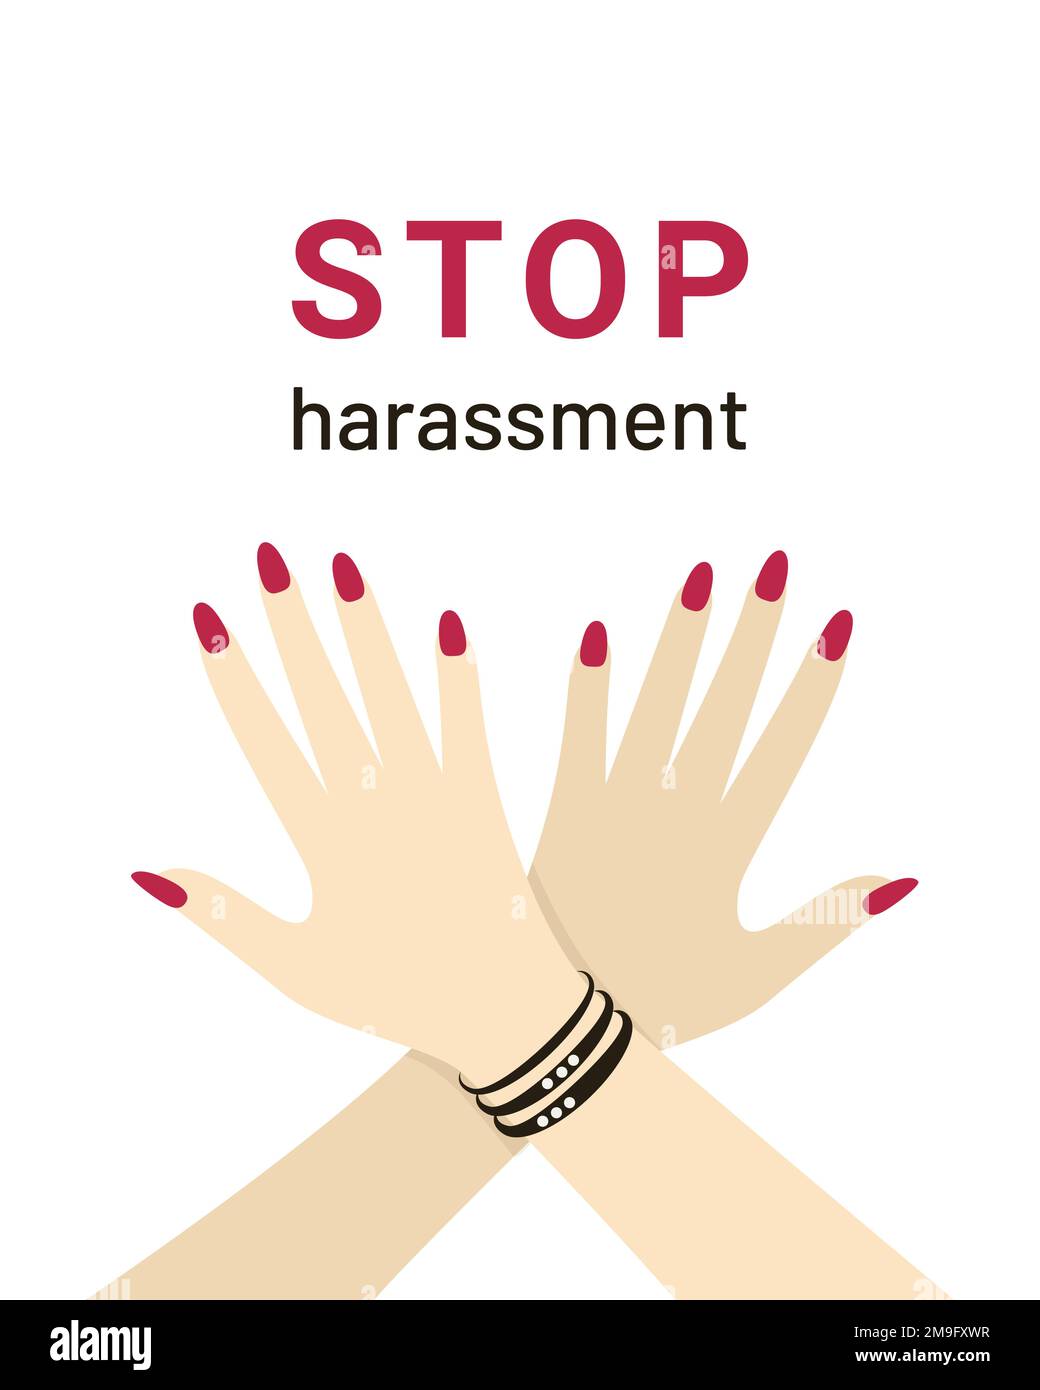 Signes et bannières pour mettre fin au harcèlement sexuel, les armes des femmes sont croisées en signe - interdit. Illustration vectorielle Illustration de Vecteur